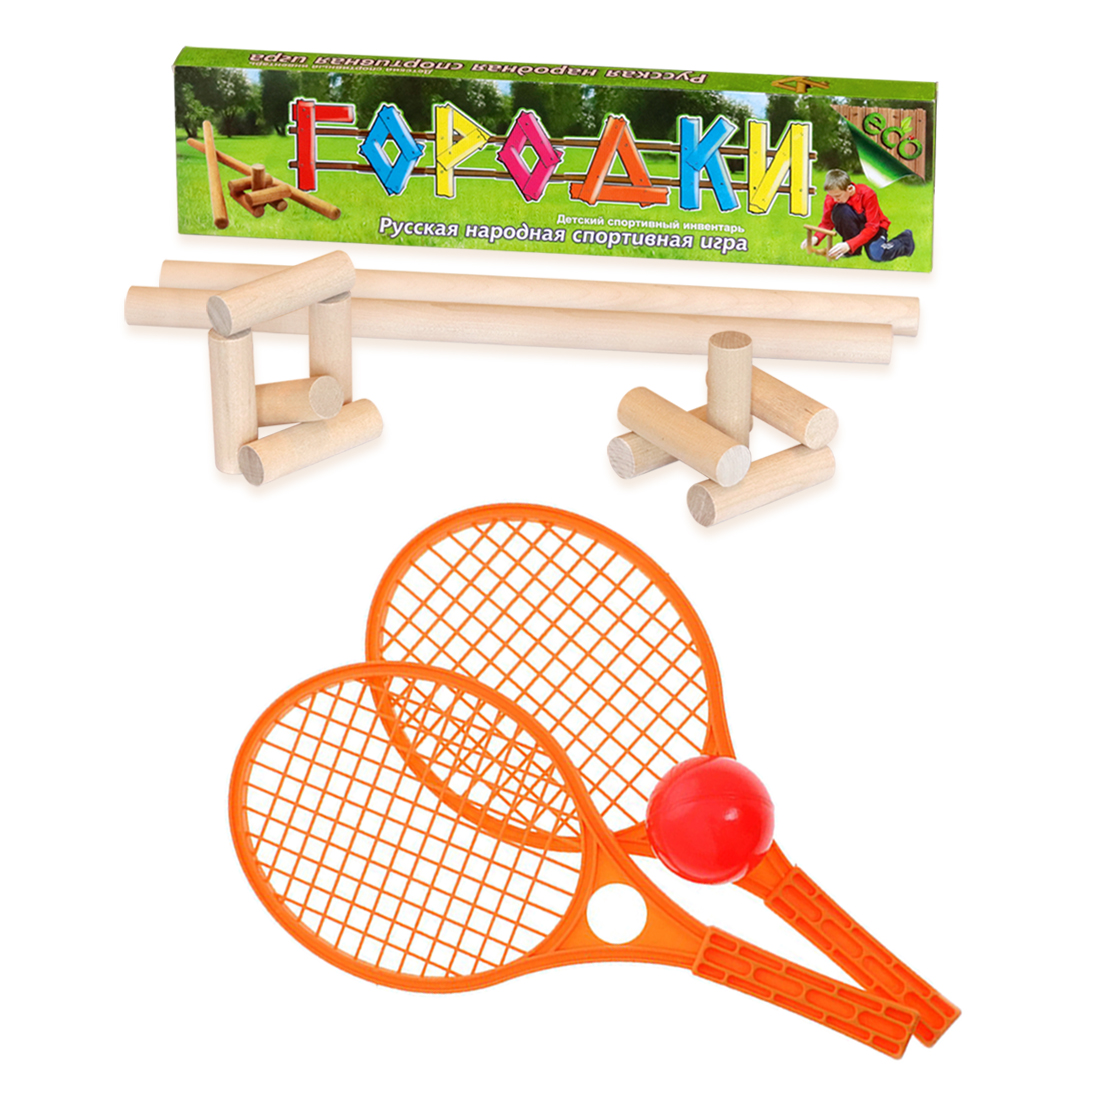 Городки ТЕБЕ ИГРУШКА + Набор для тенниса оранжевый мячики для настольного тенниса donic elite 1 40 6 штук 608518 оранжевый